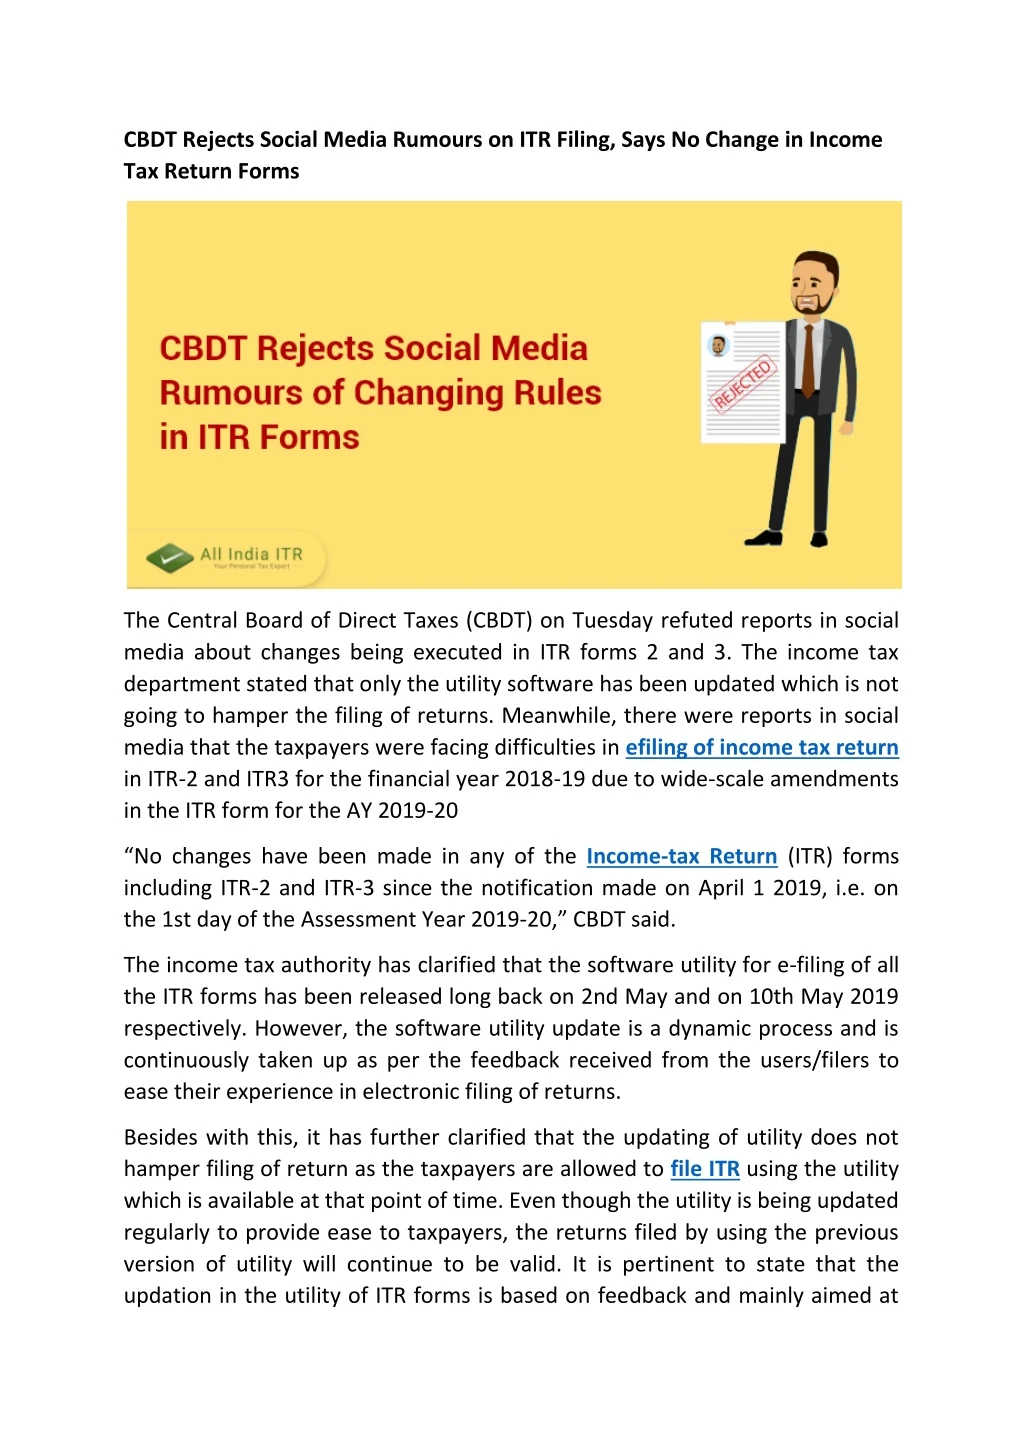 cbdt rejects social media rumours on itr filing